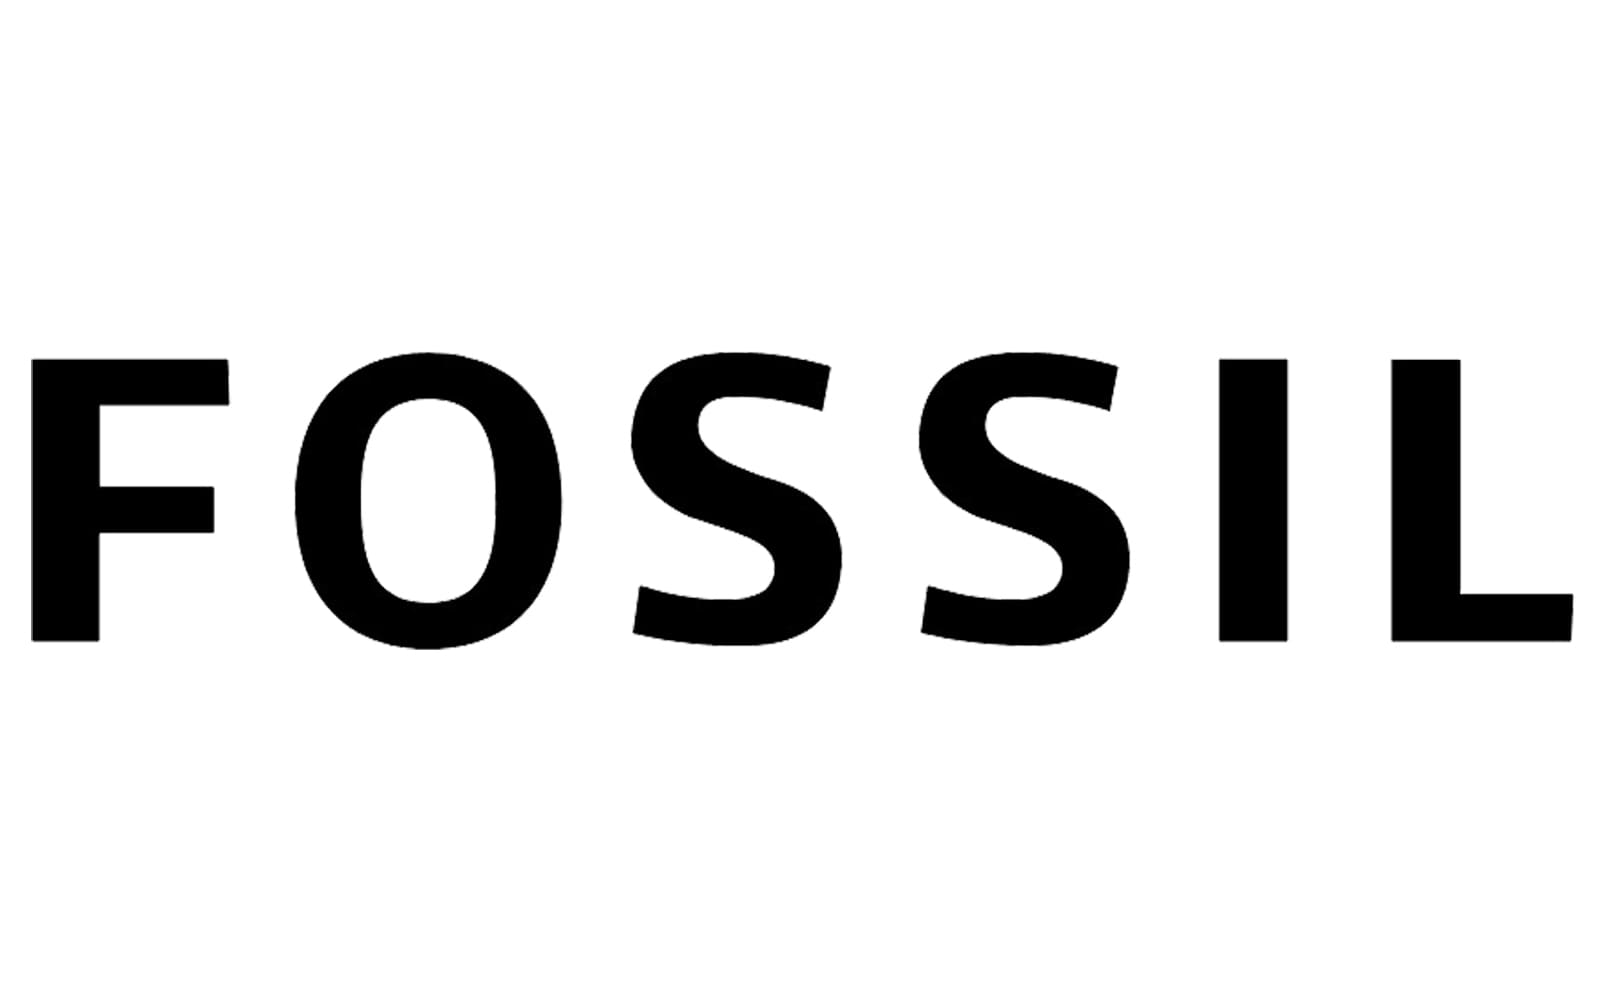 Fossil - sprrawdź wszystkie promocje